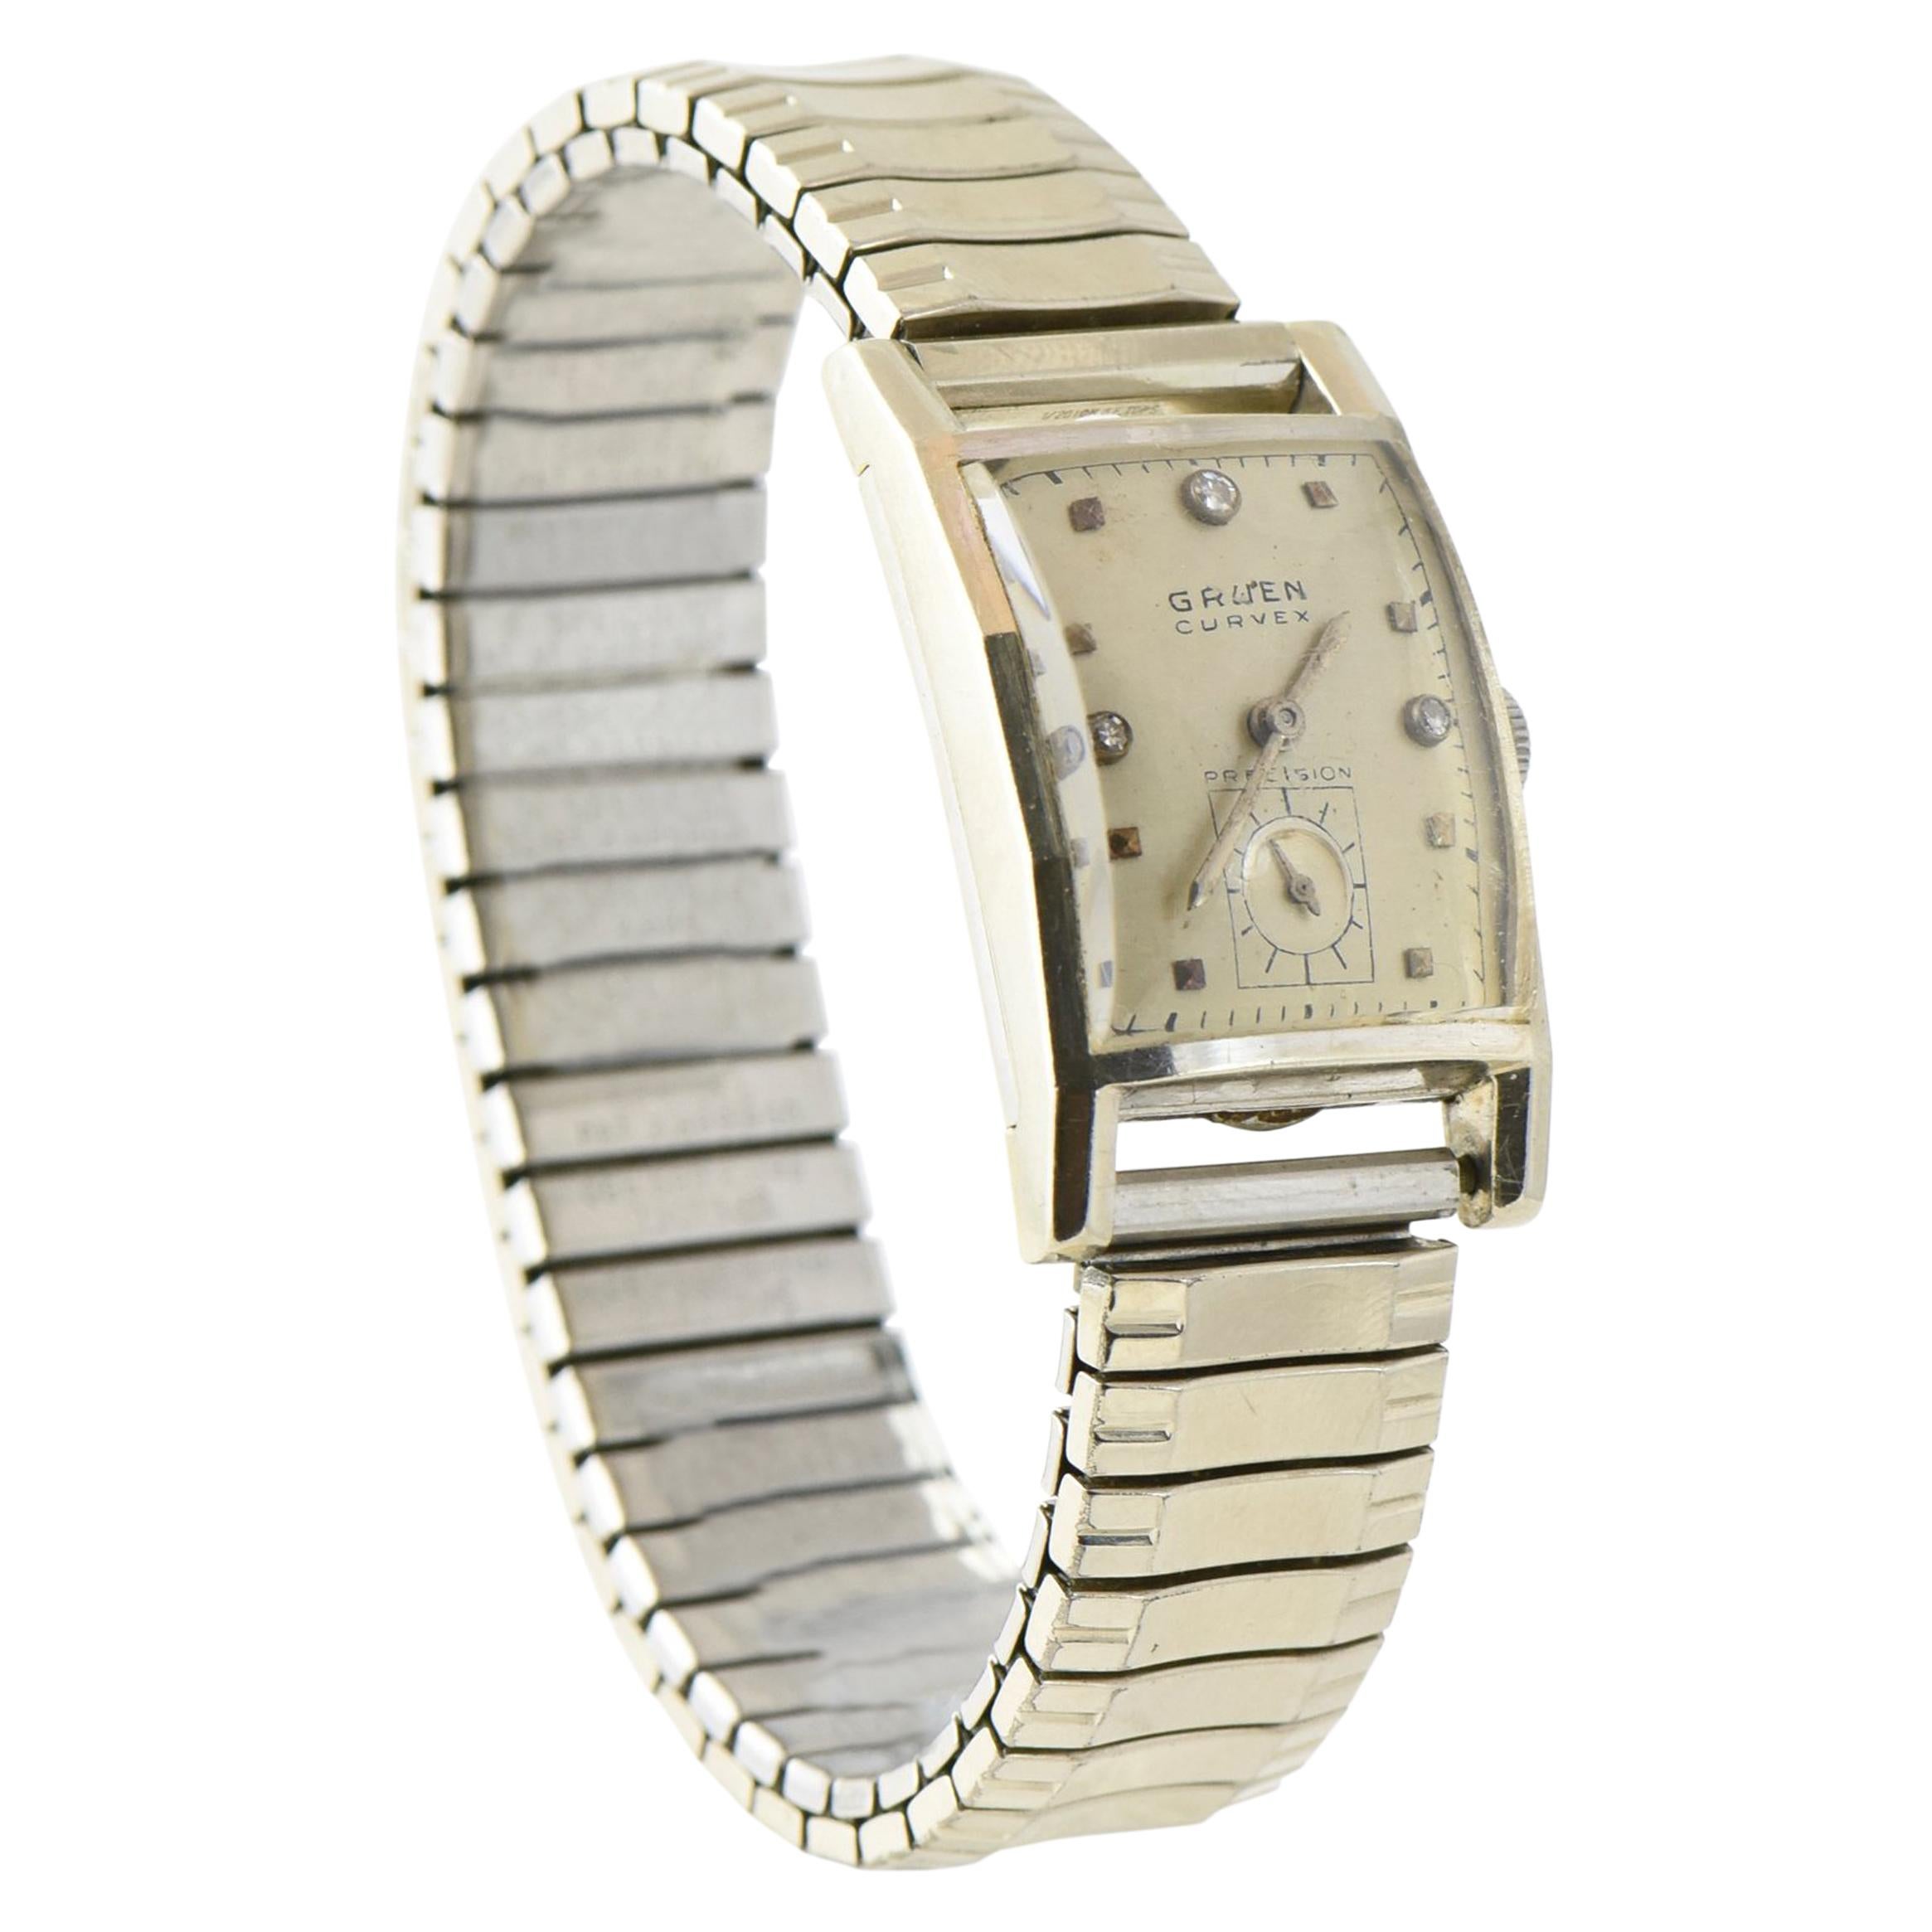 Gruen Curvex White Gold Watch with Steel Speidel Band